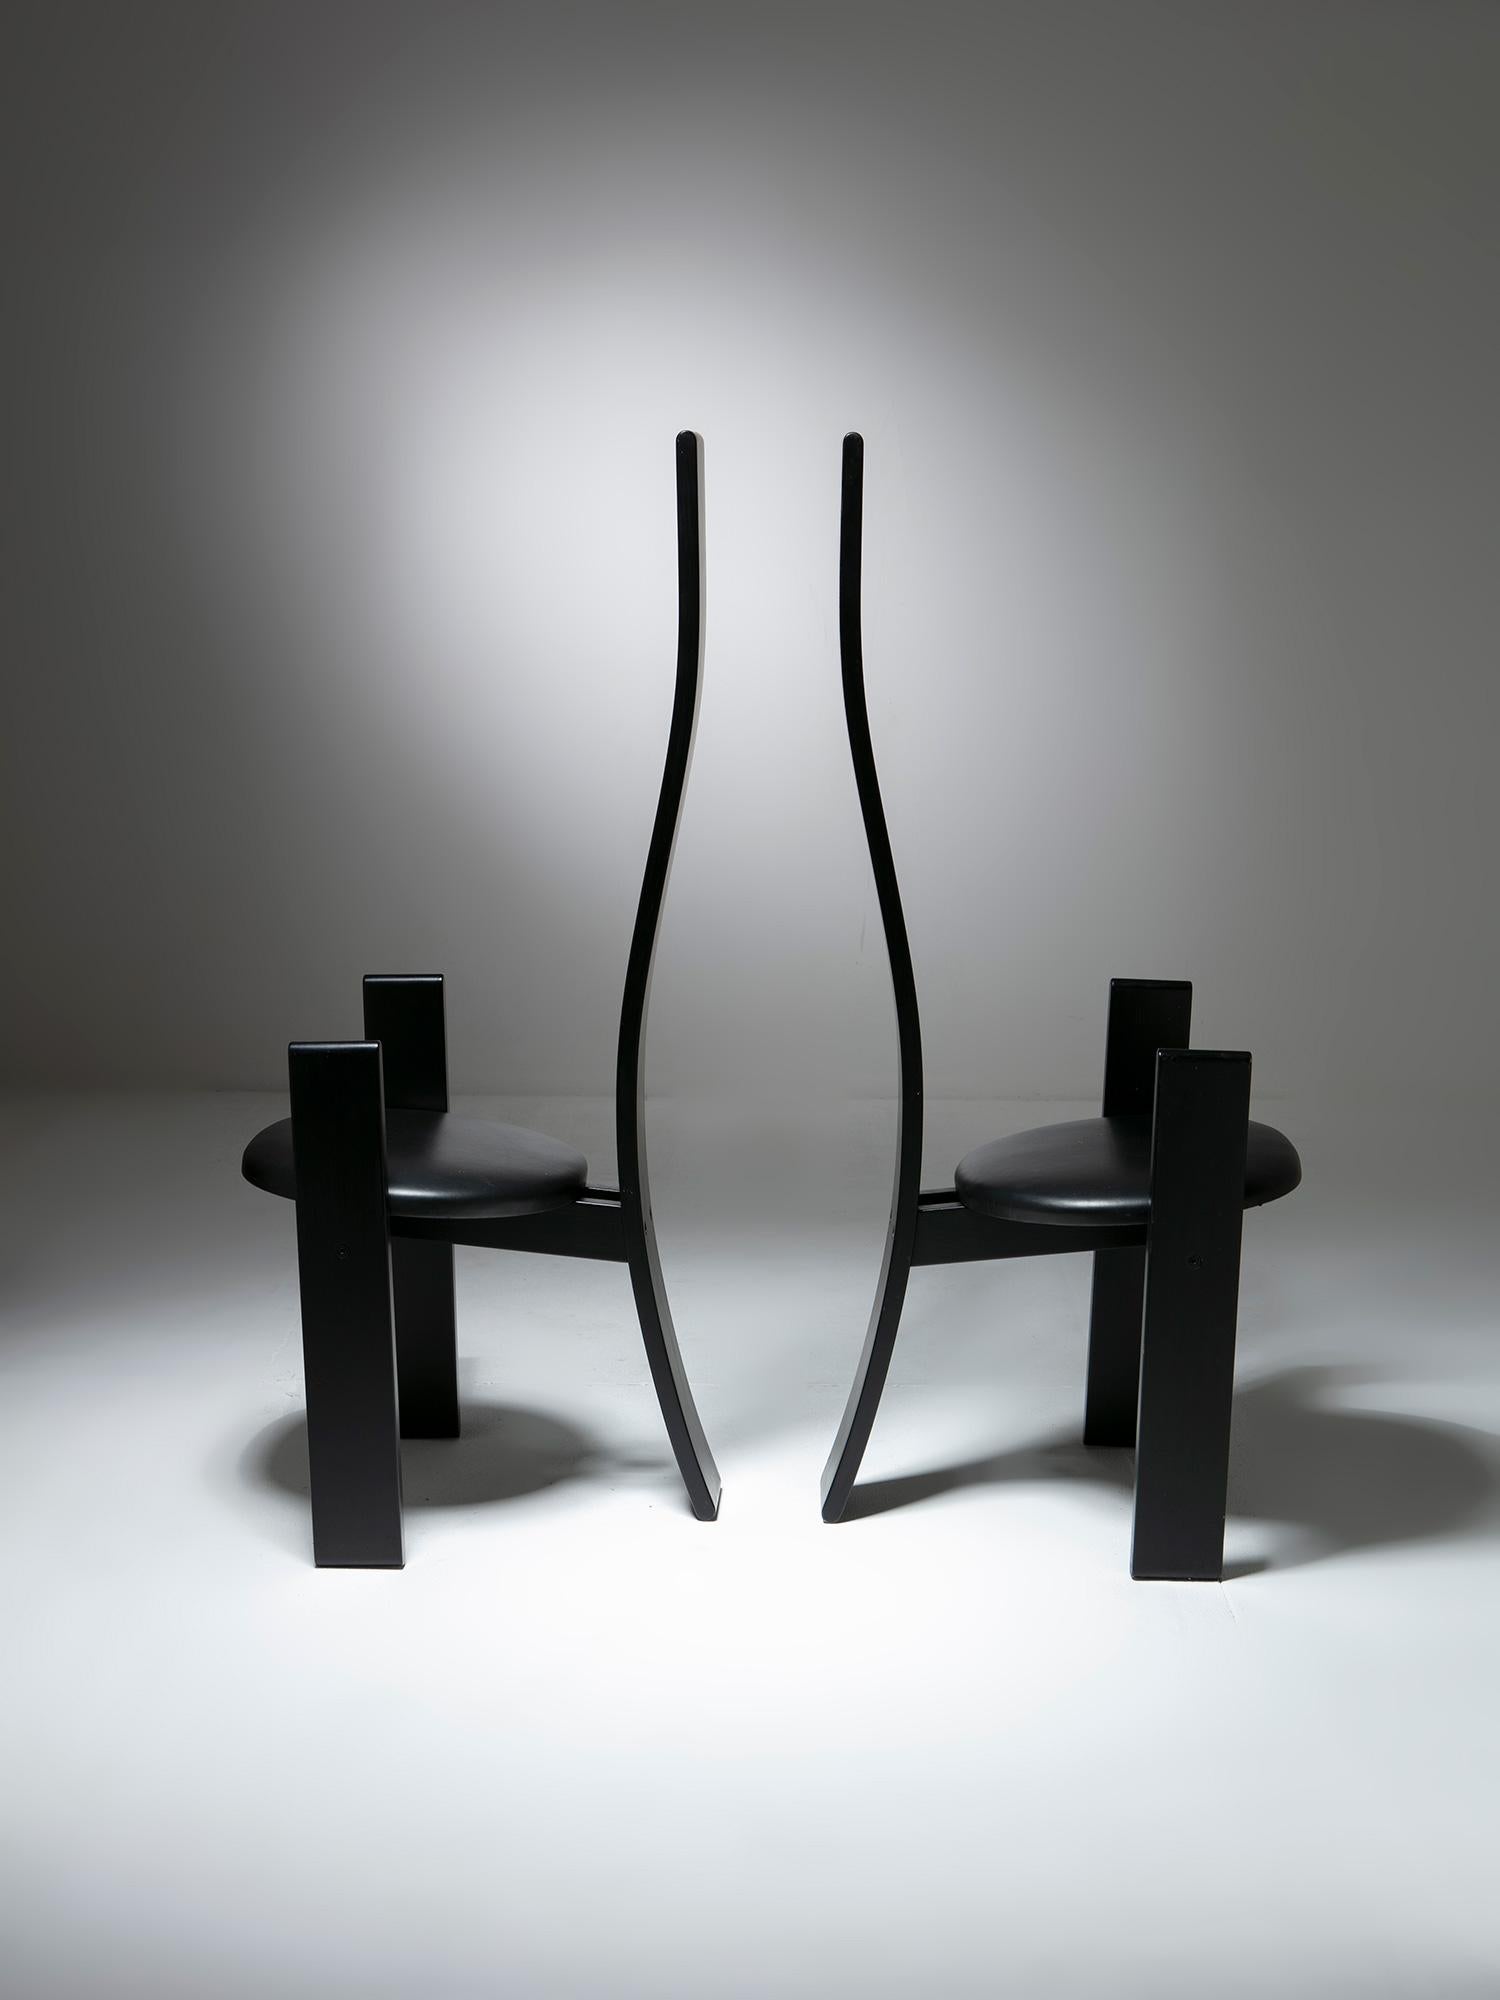 Paire de chaises SD51 Golem par Vico Magistretti pour Poggi.
Dossier long et sinueux, cadre laqué et revêtement en cuir.
Une troisième pièce unique disponible